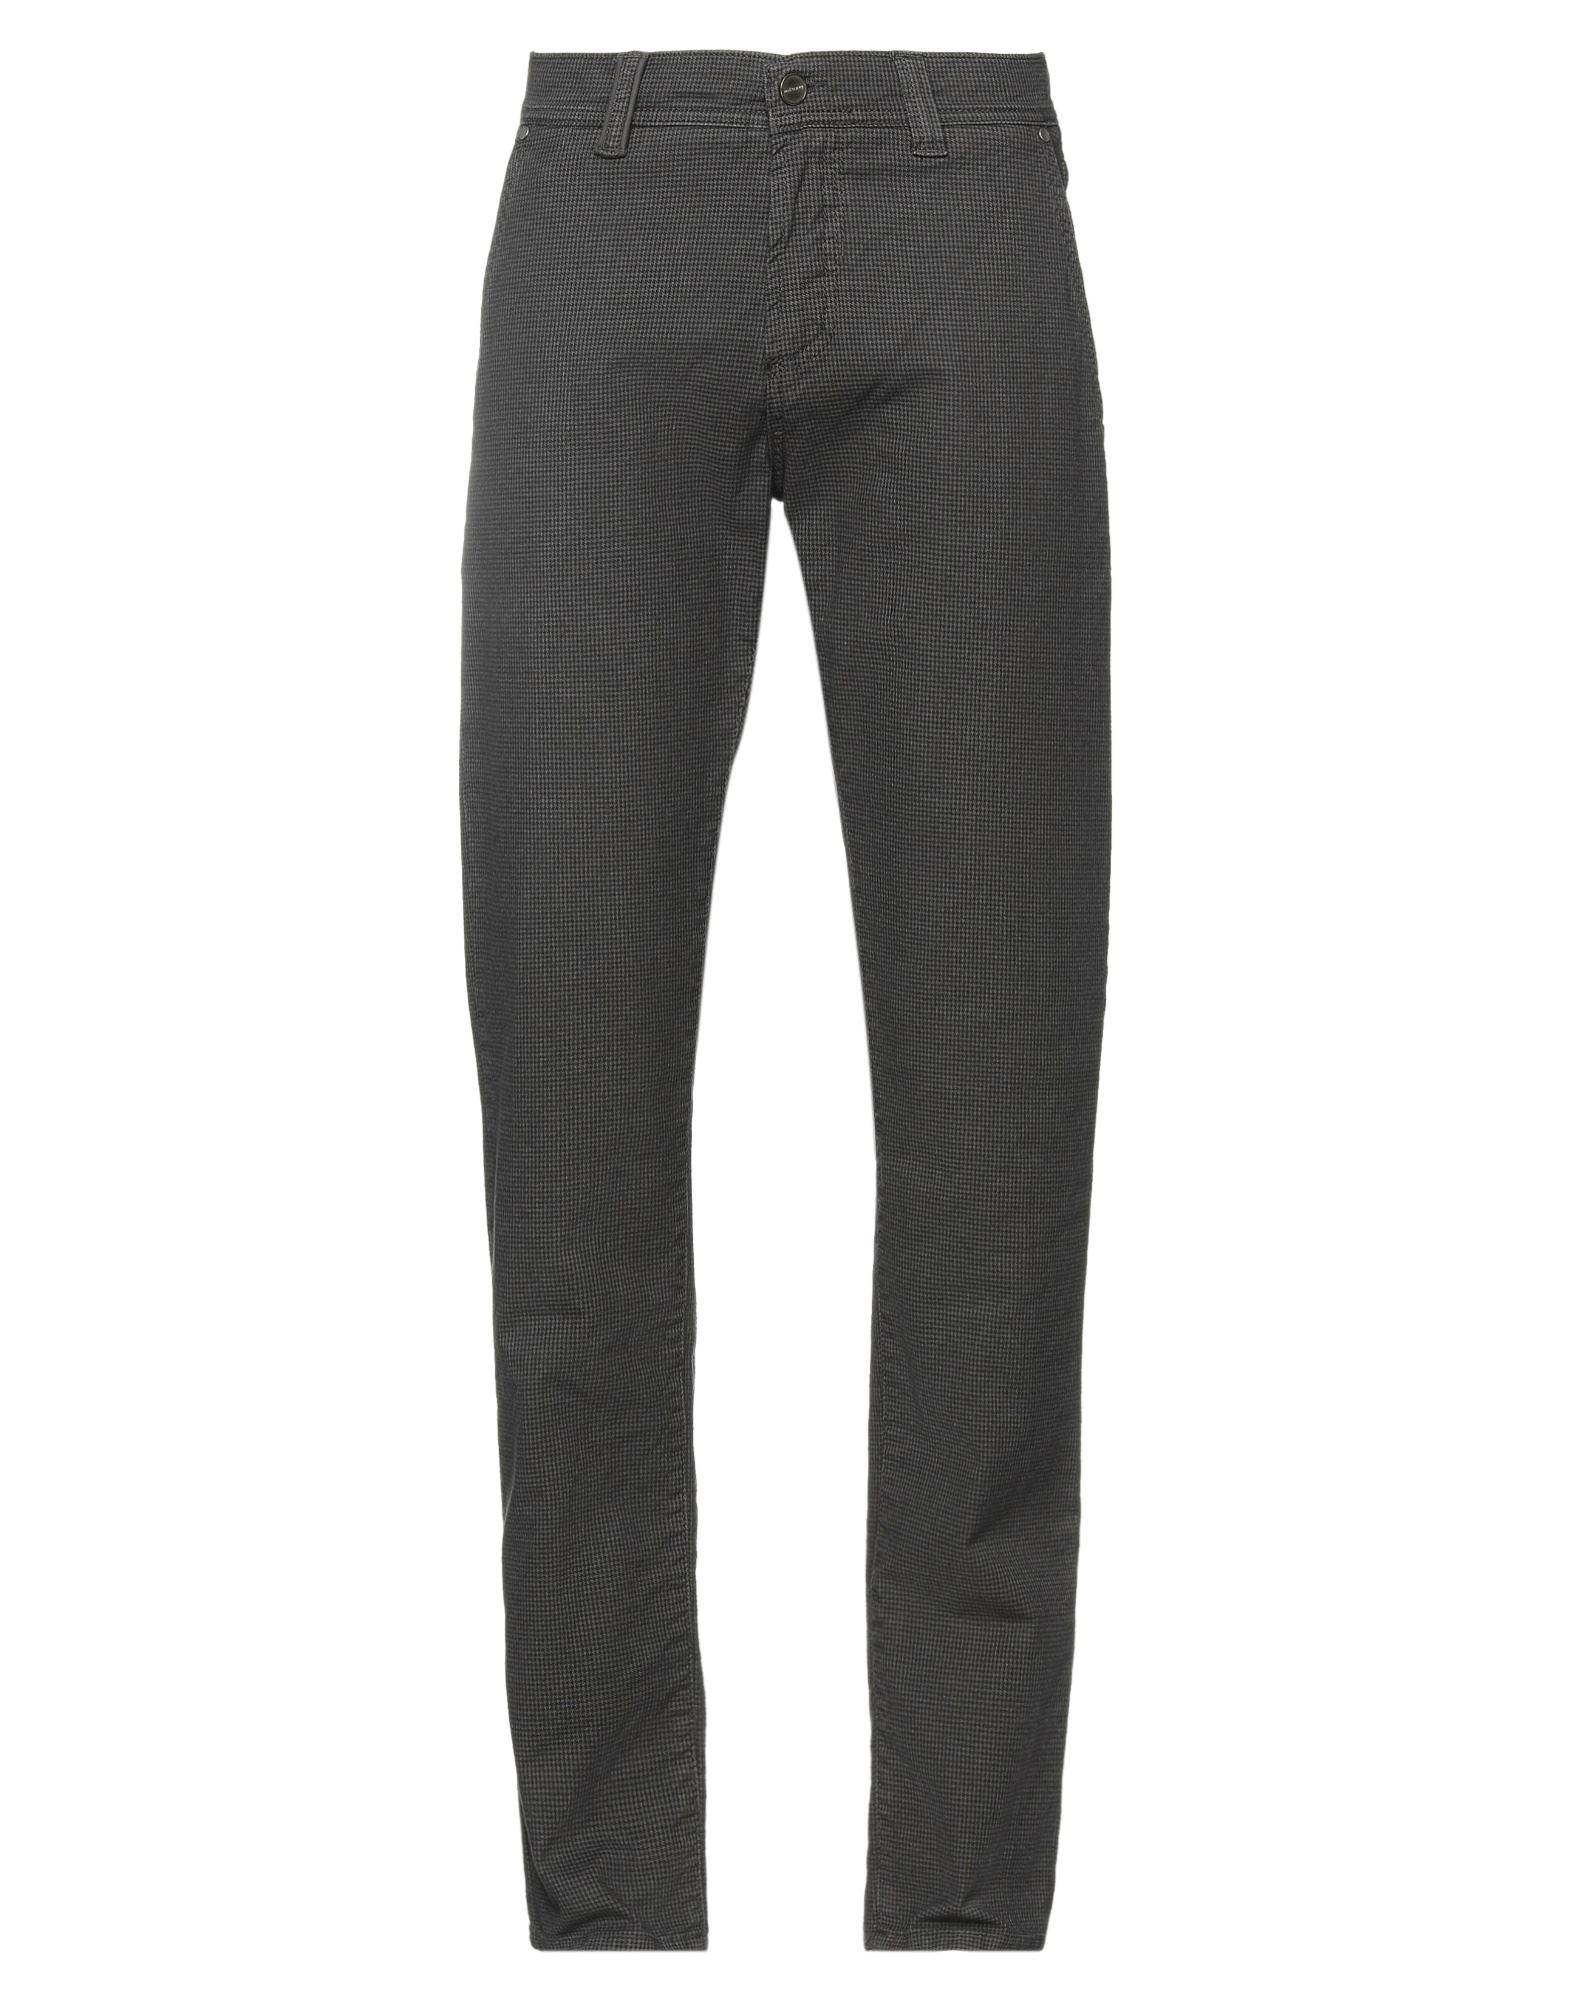 Nicwave Pants In Steel Grey